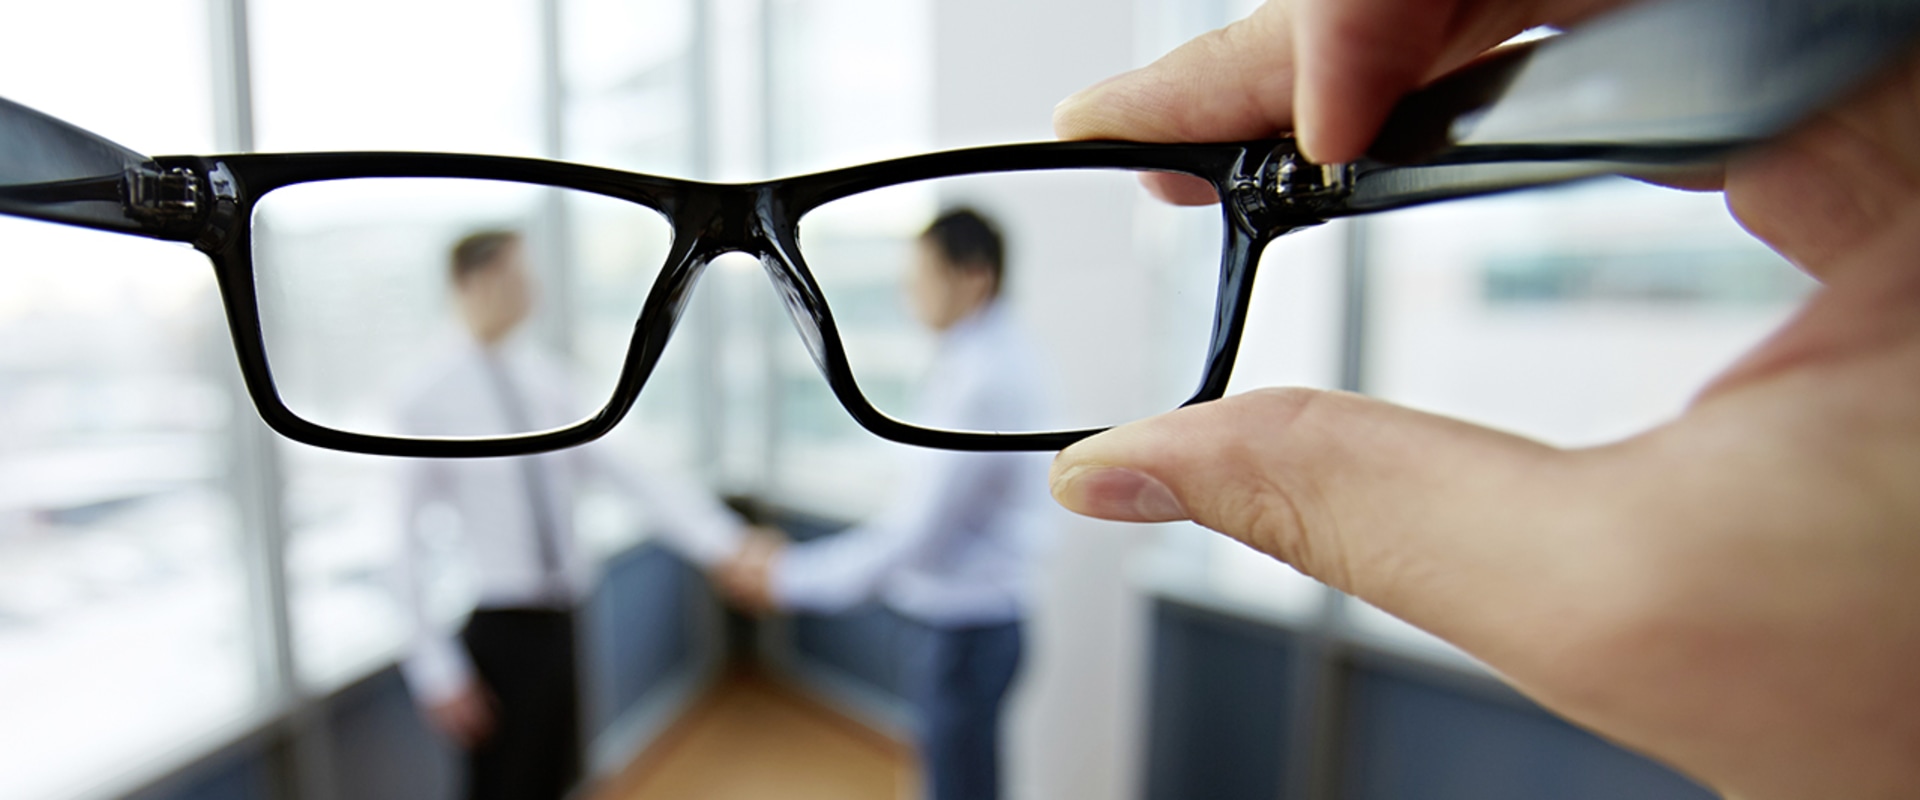 Hoeveel moet een progressieve bril kosten?